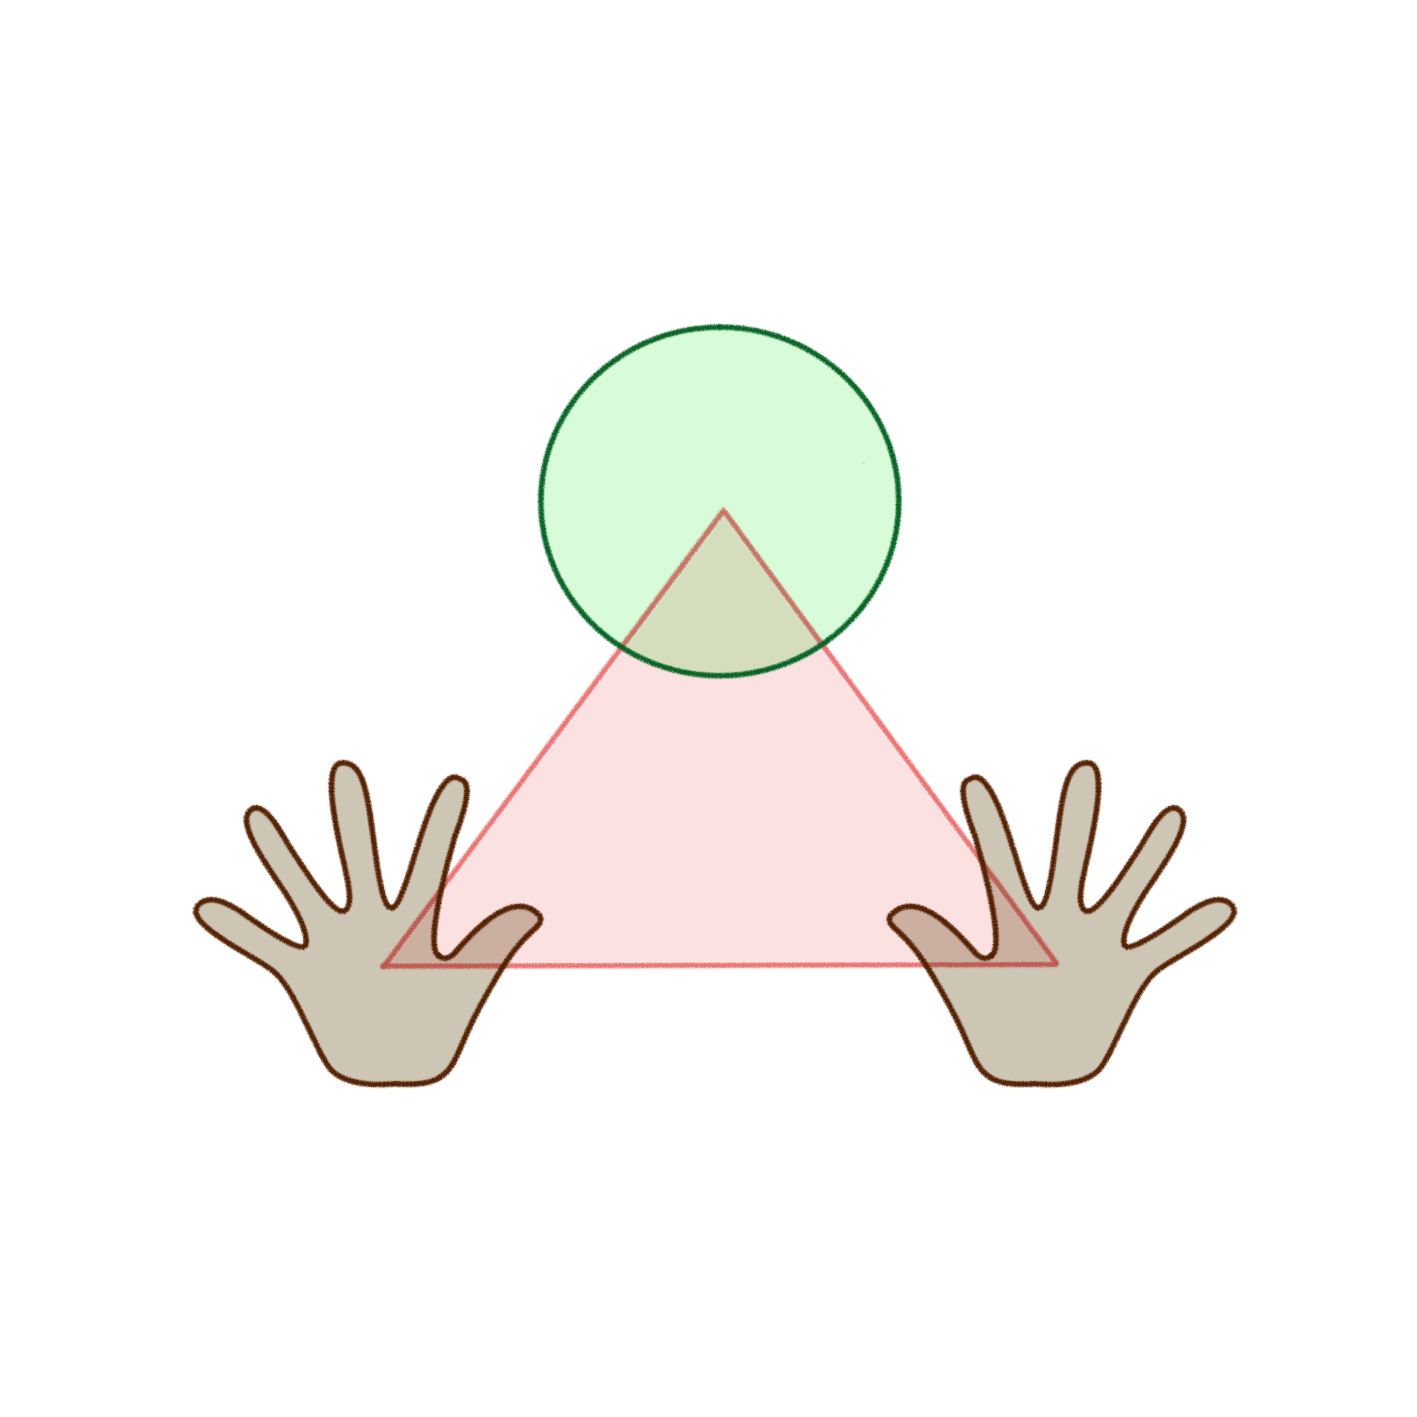 Ilustração. Um pequeno círculo sobreposto à parte de cima de um triângulo. Abaixo, nas pontas do triângulo, duas mãos, uma em cada lado.